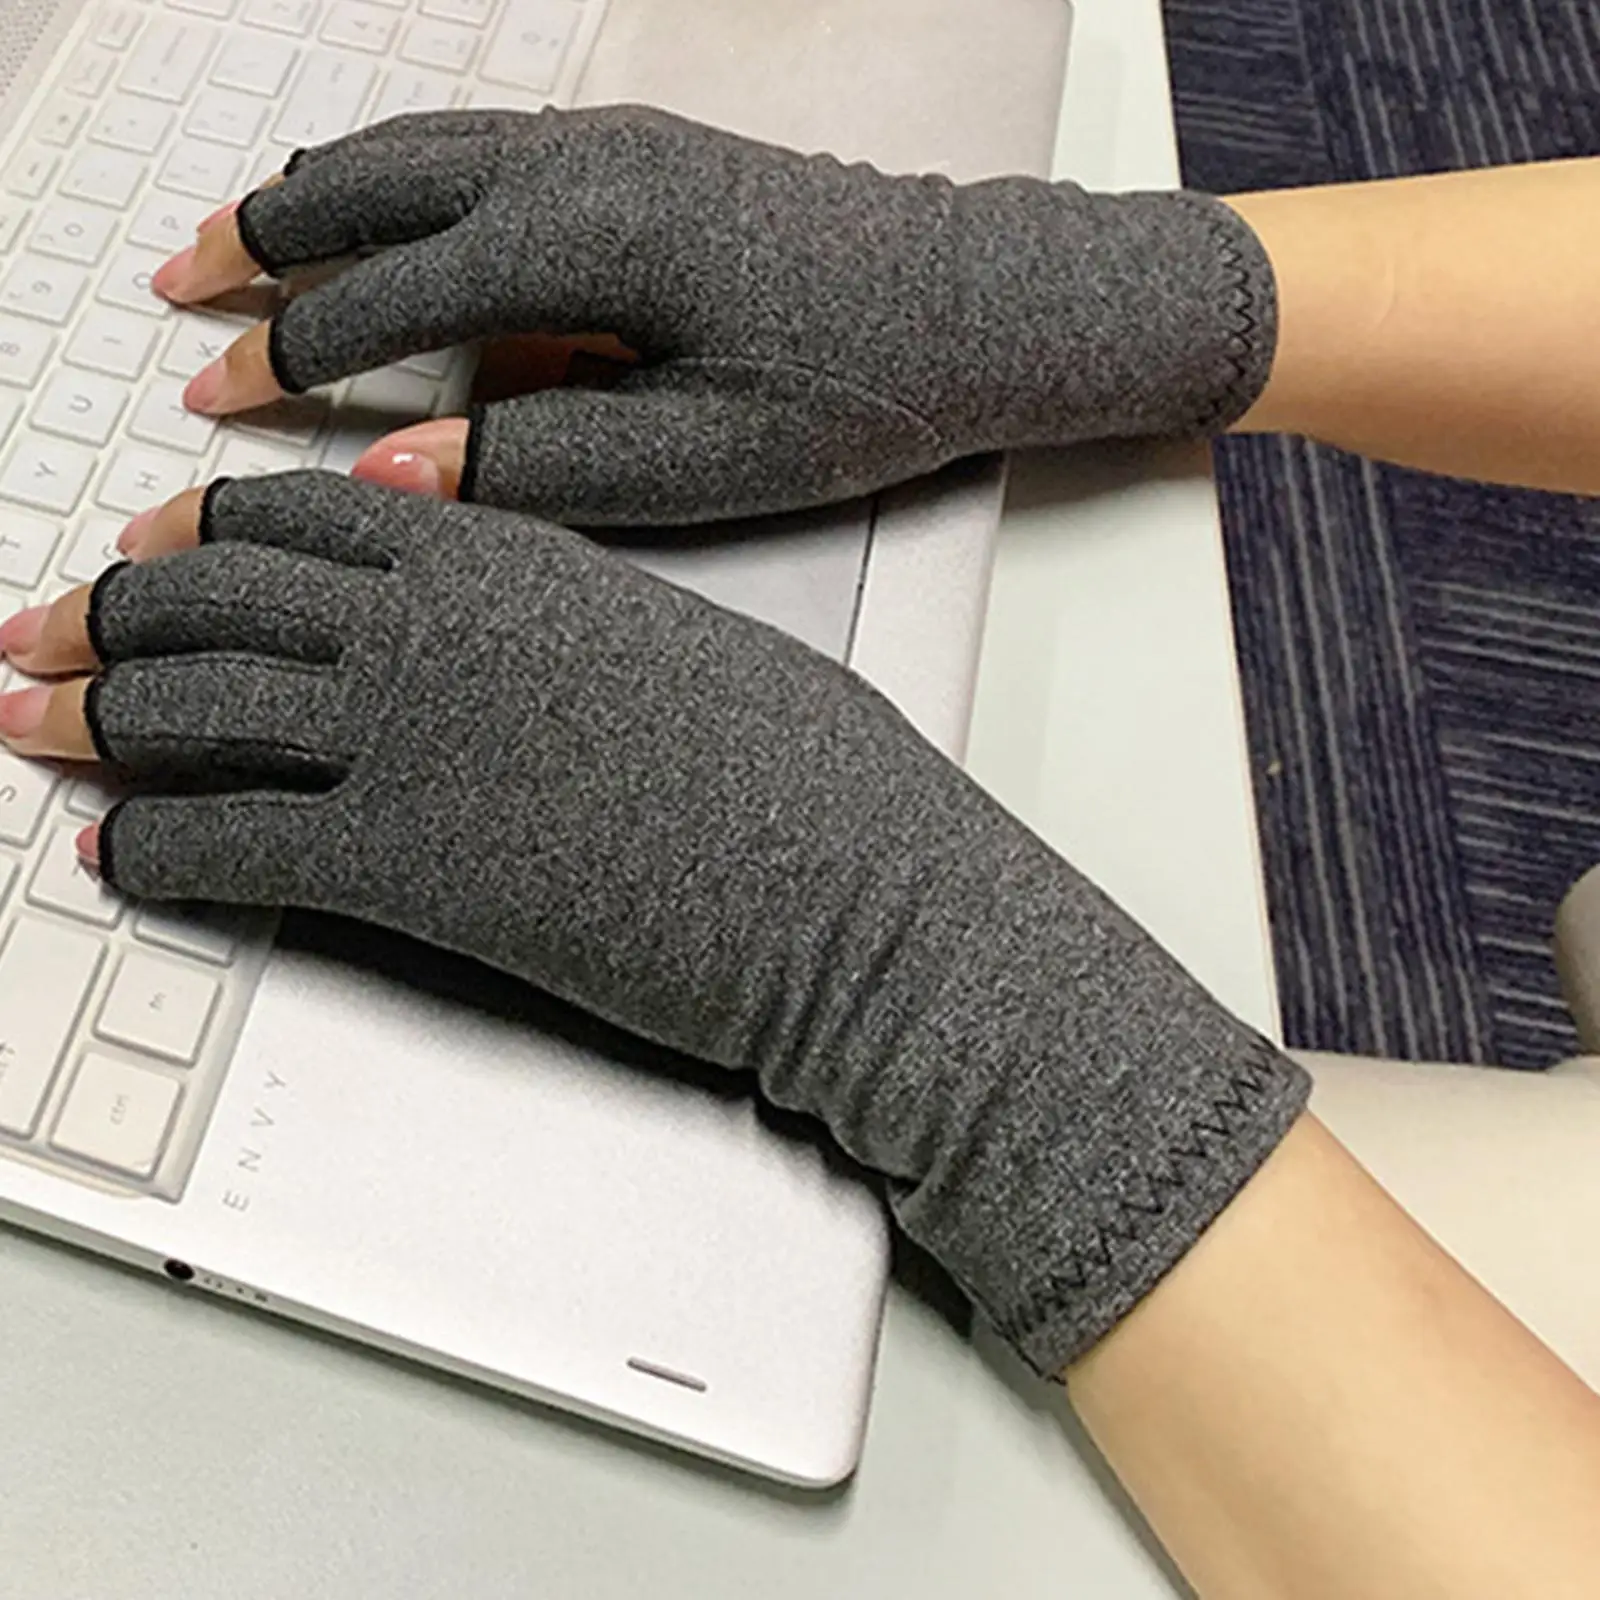 Fingerless Arthritis Compression Gloves Arthritis Fingerless Gloves